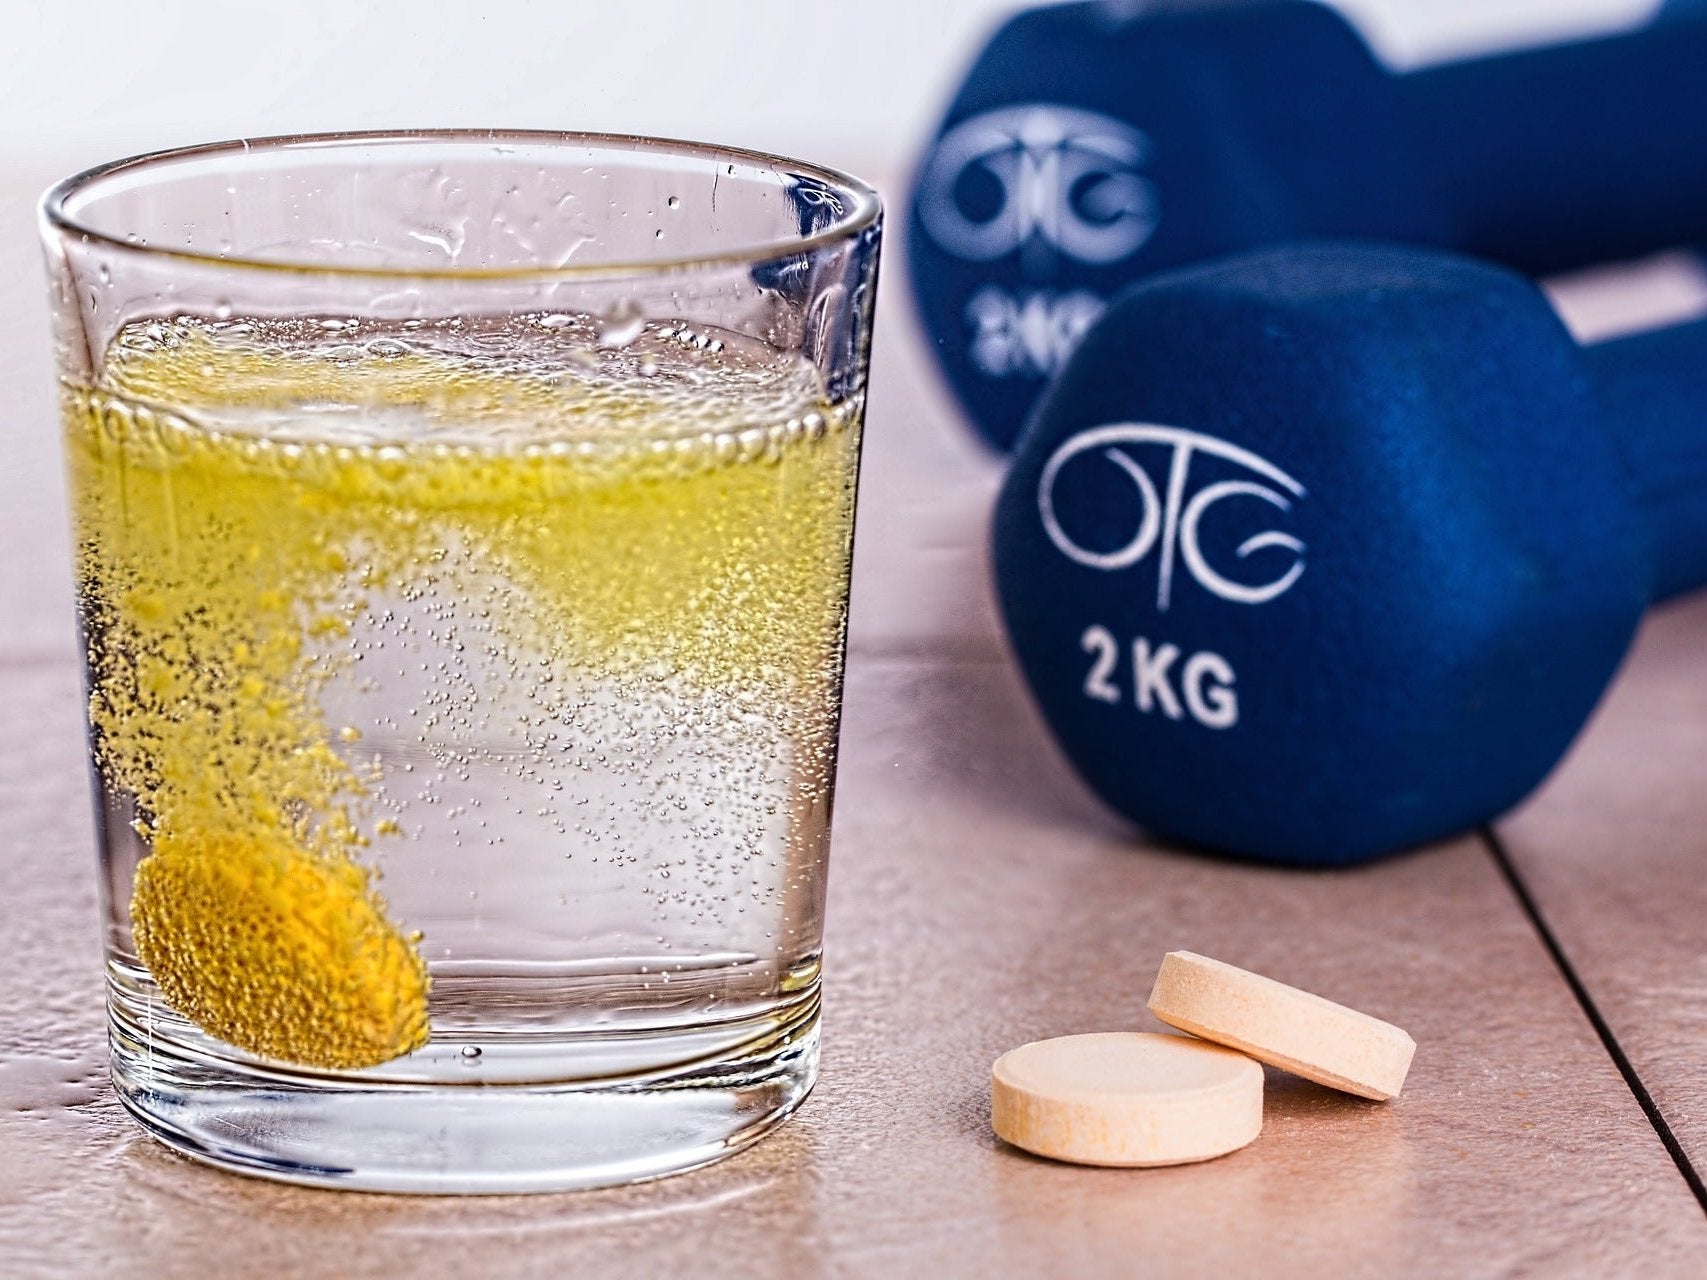 Welke vitamines en mineralen zijn belangrijk voor sporters?